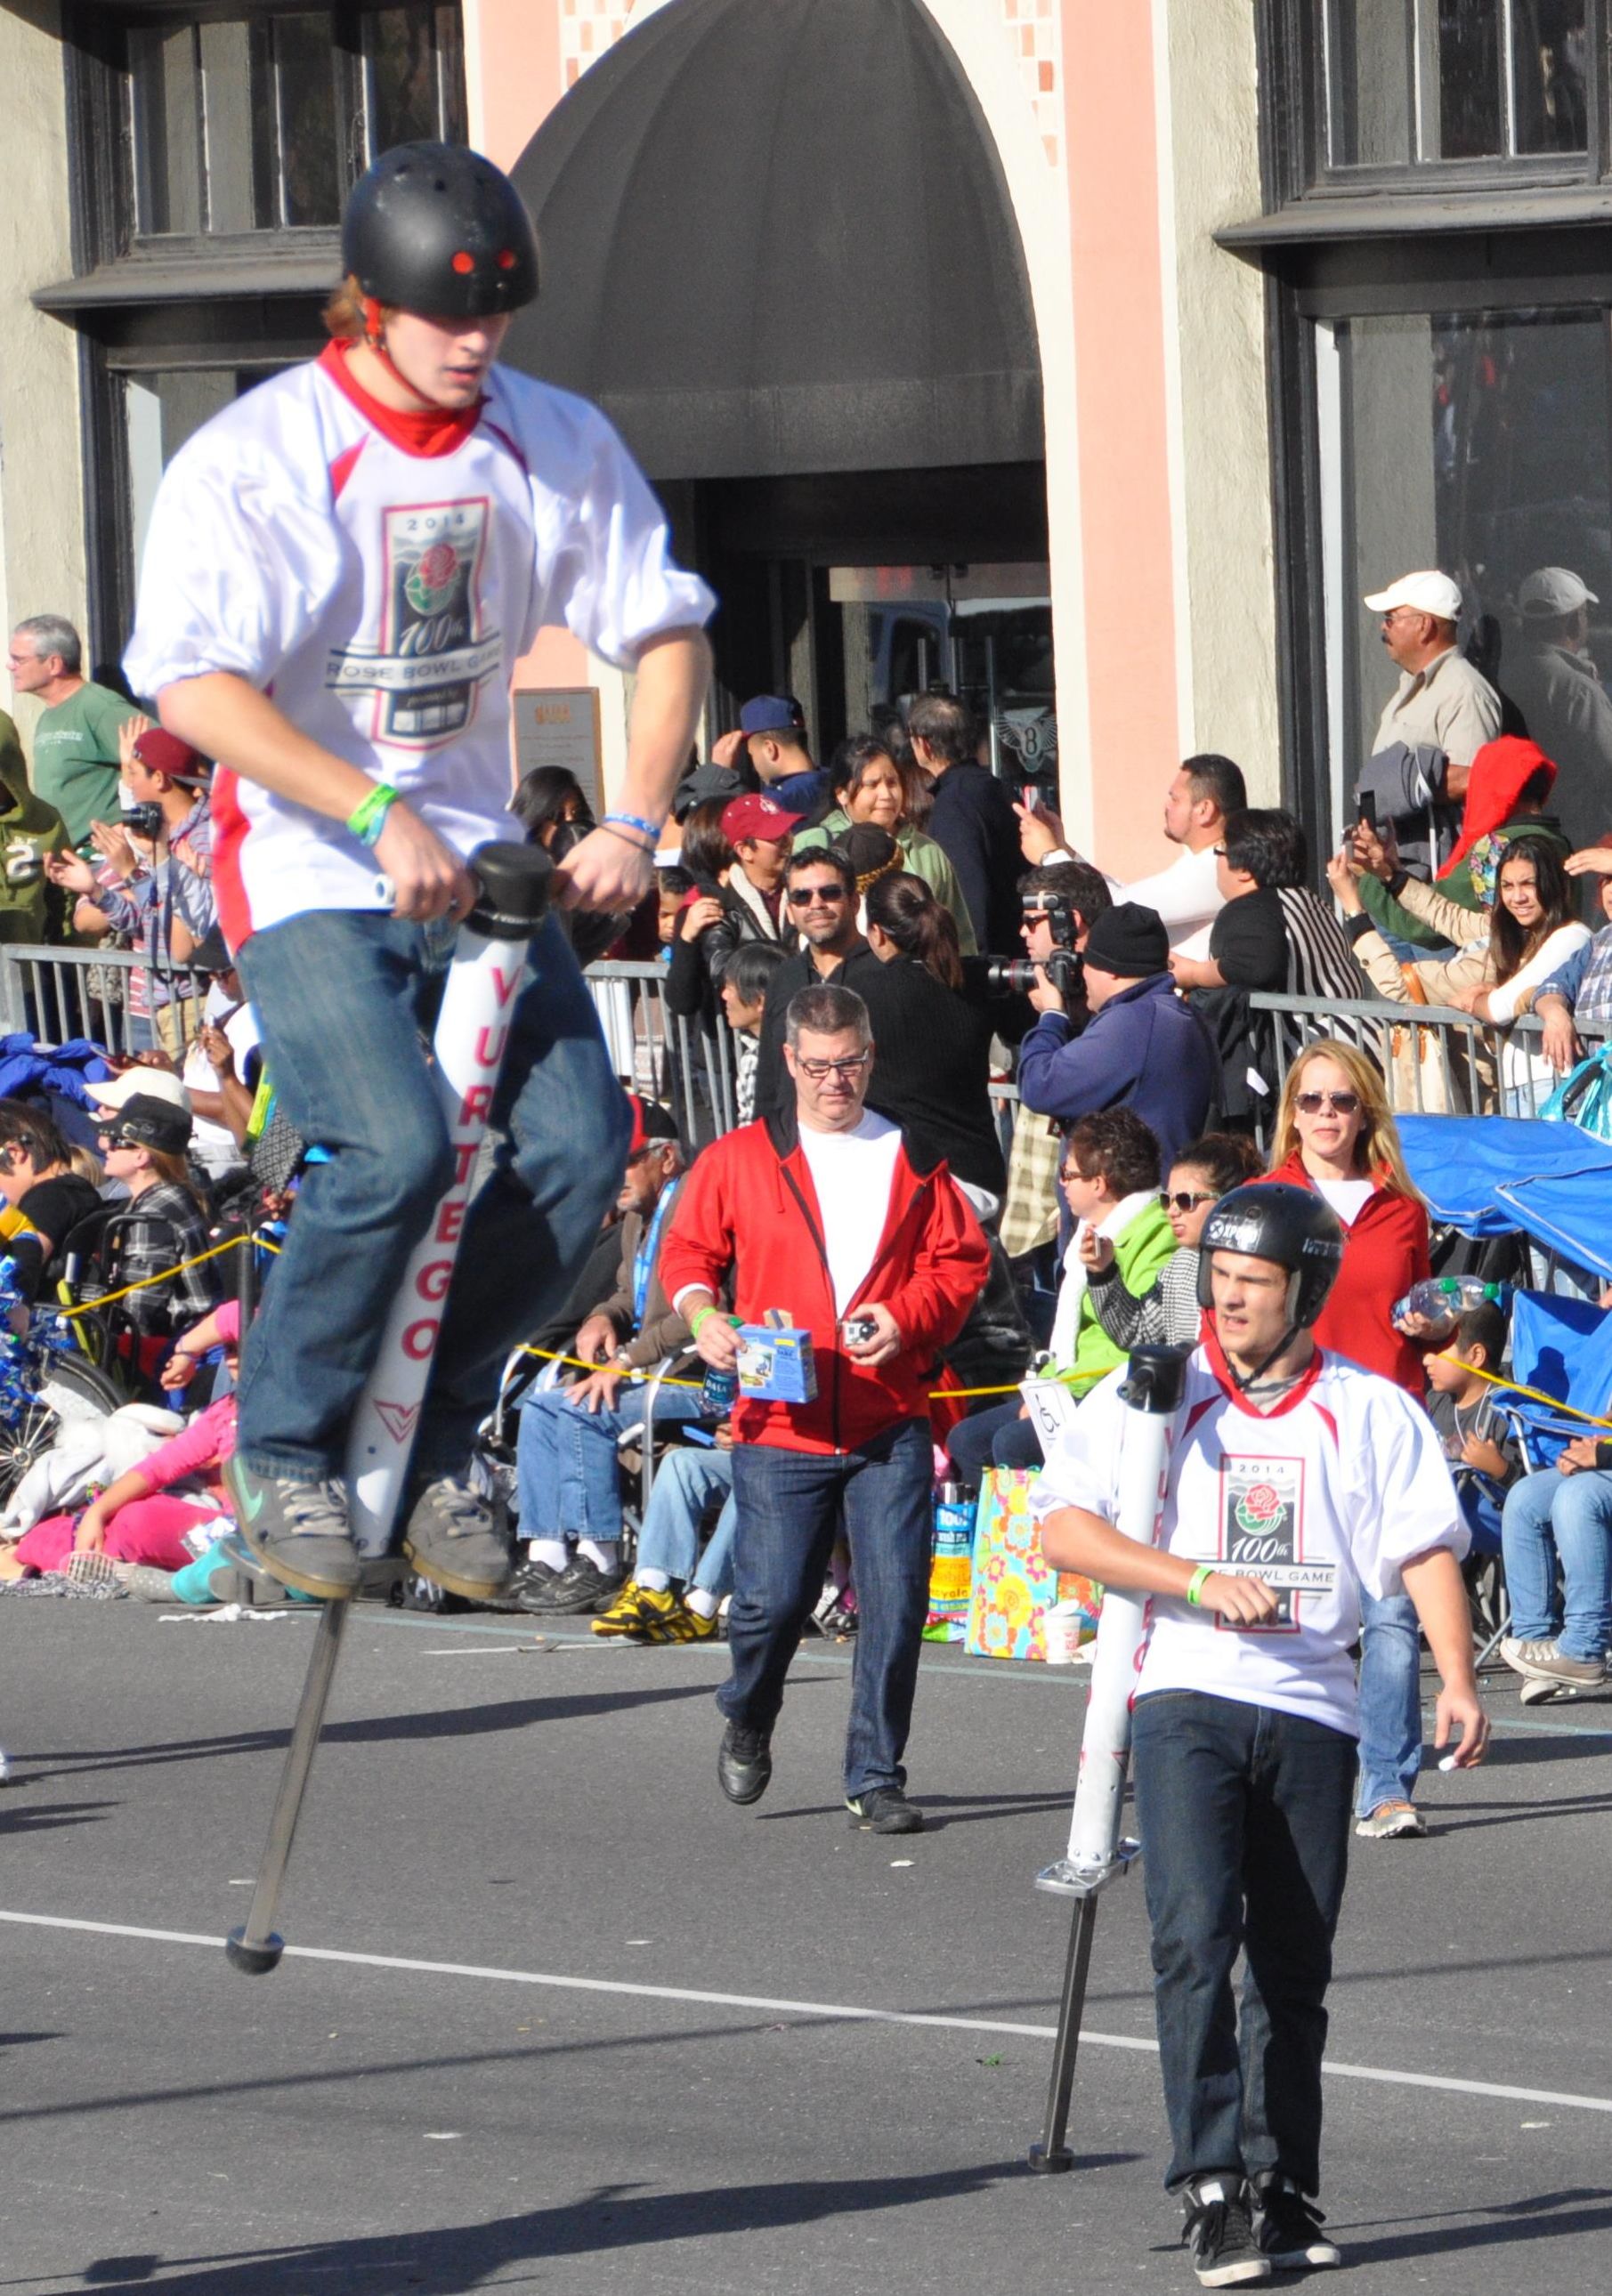 Xpogo Stunt Team (a), Tournament of Roses Parade, Pasadena, CA - 2014-01-01